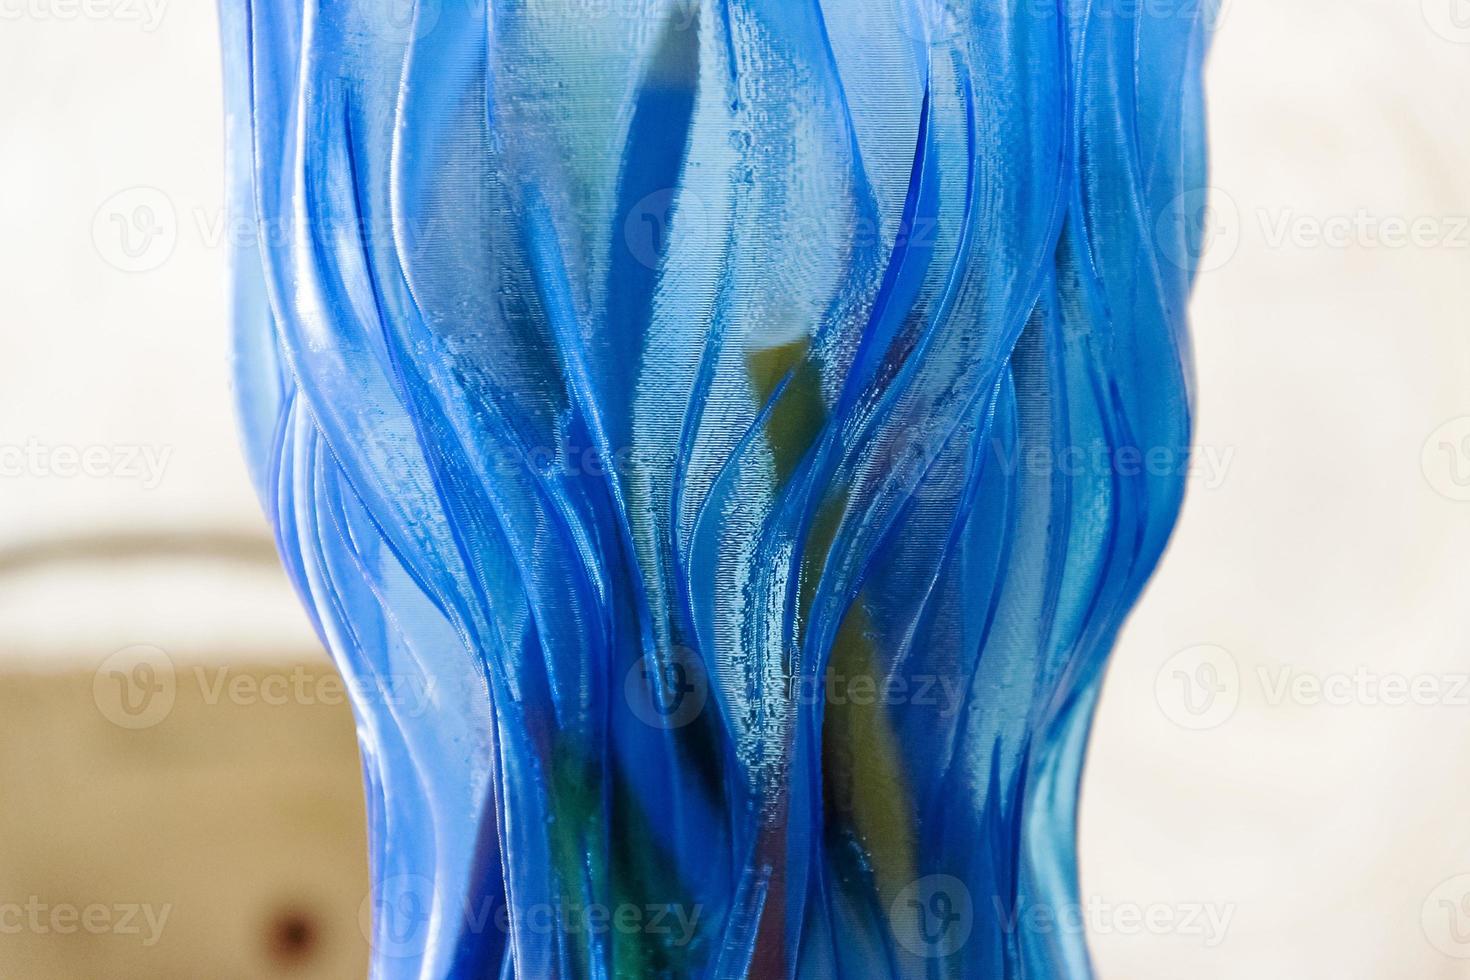 carolina vaso azul abstrato lindo plástico grande foto